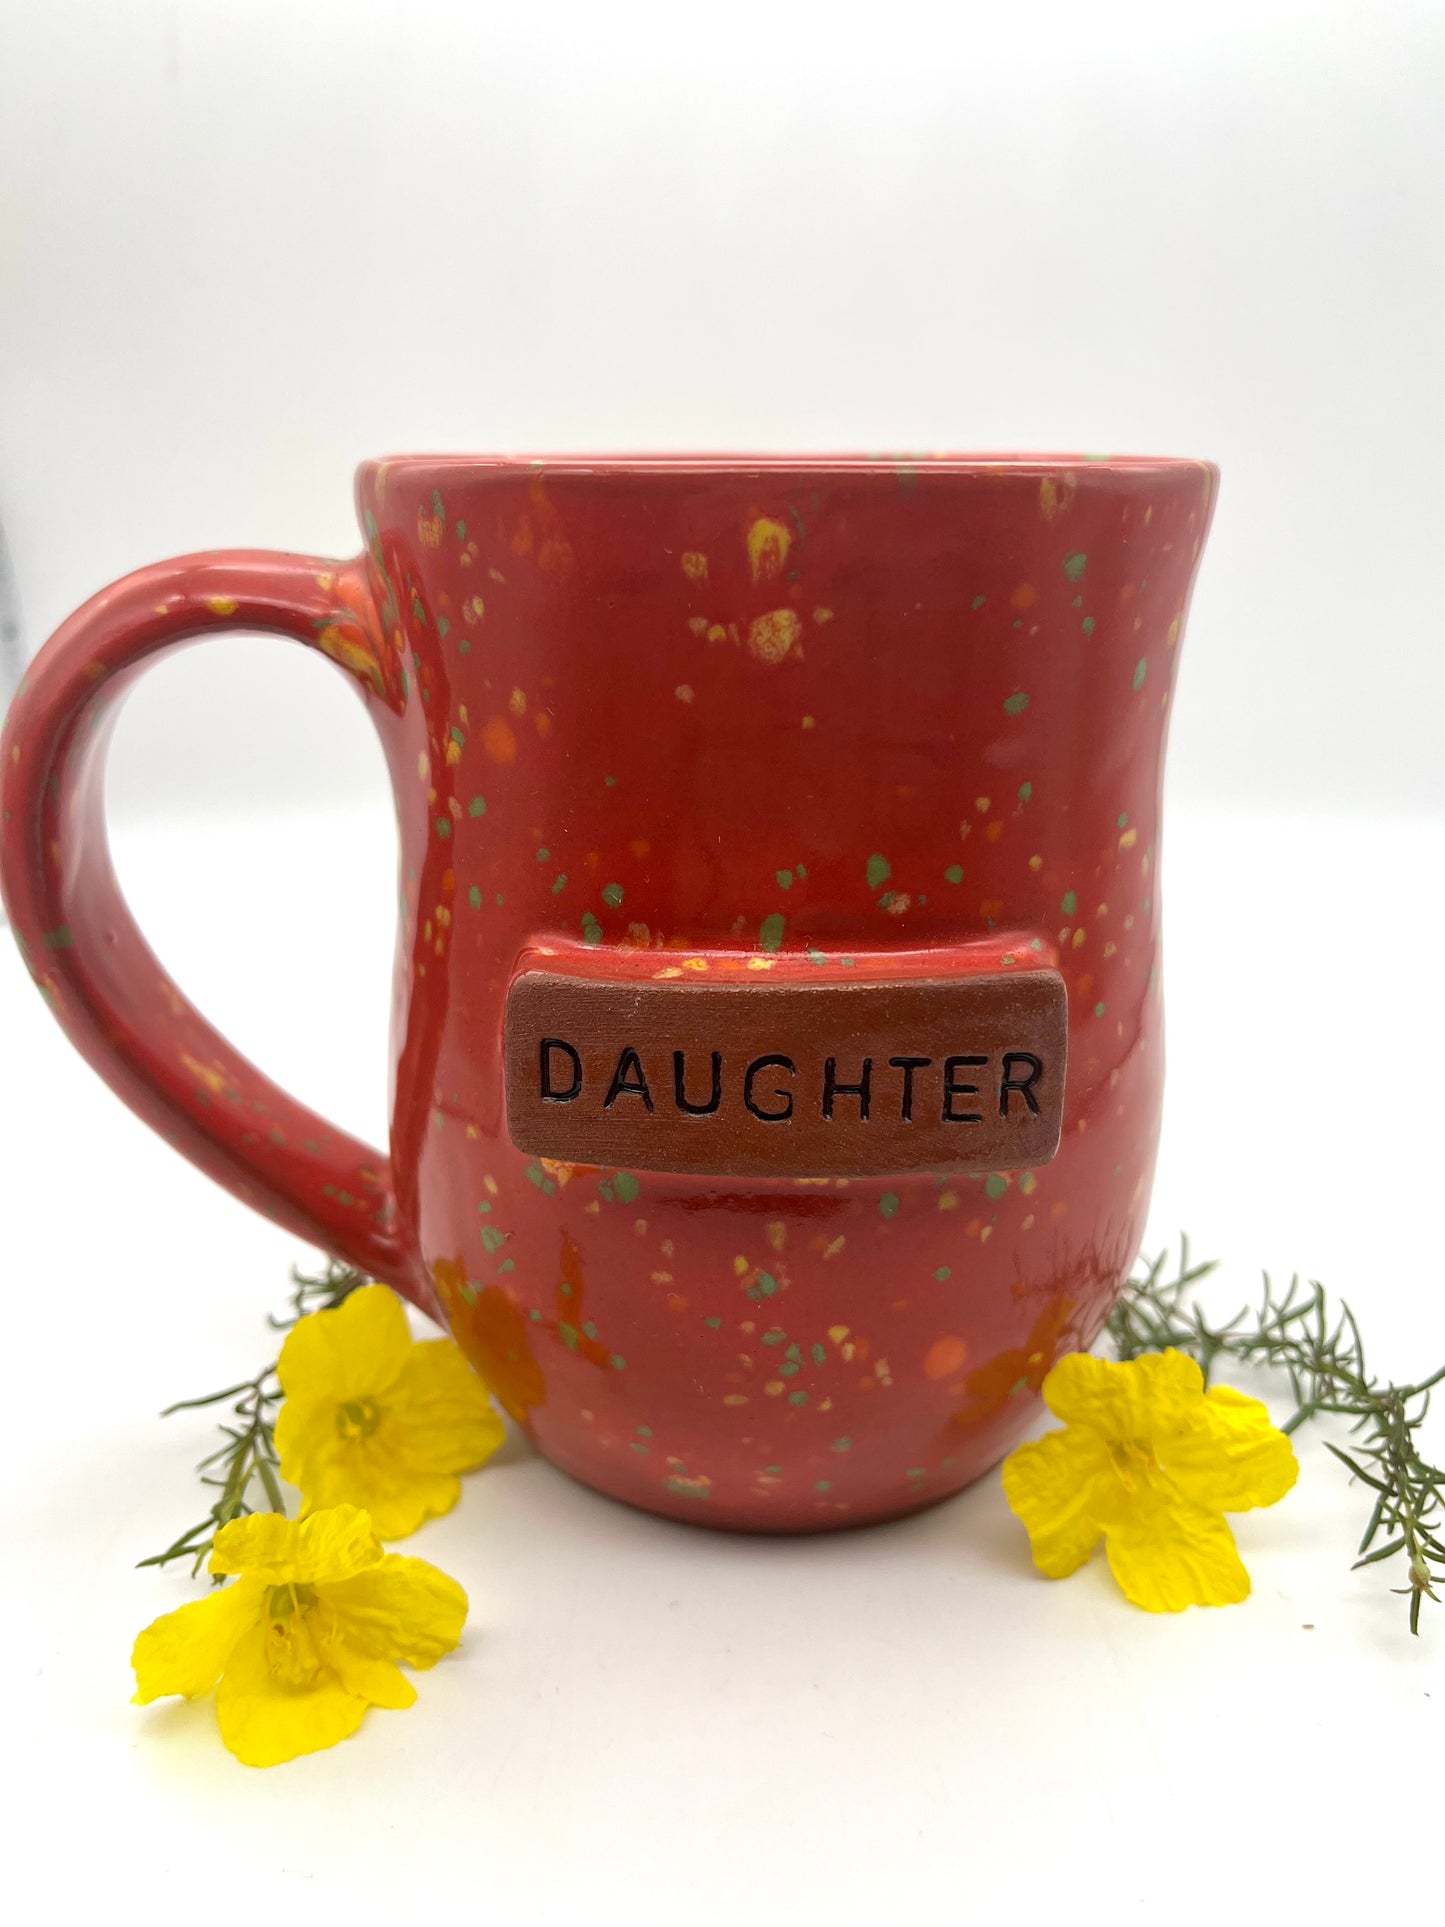 Daughter Handmade Ceramic Mug